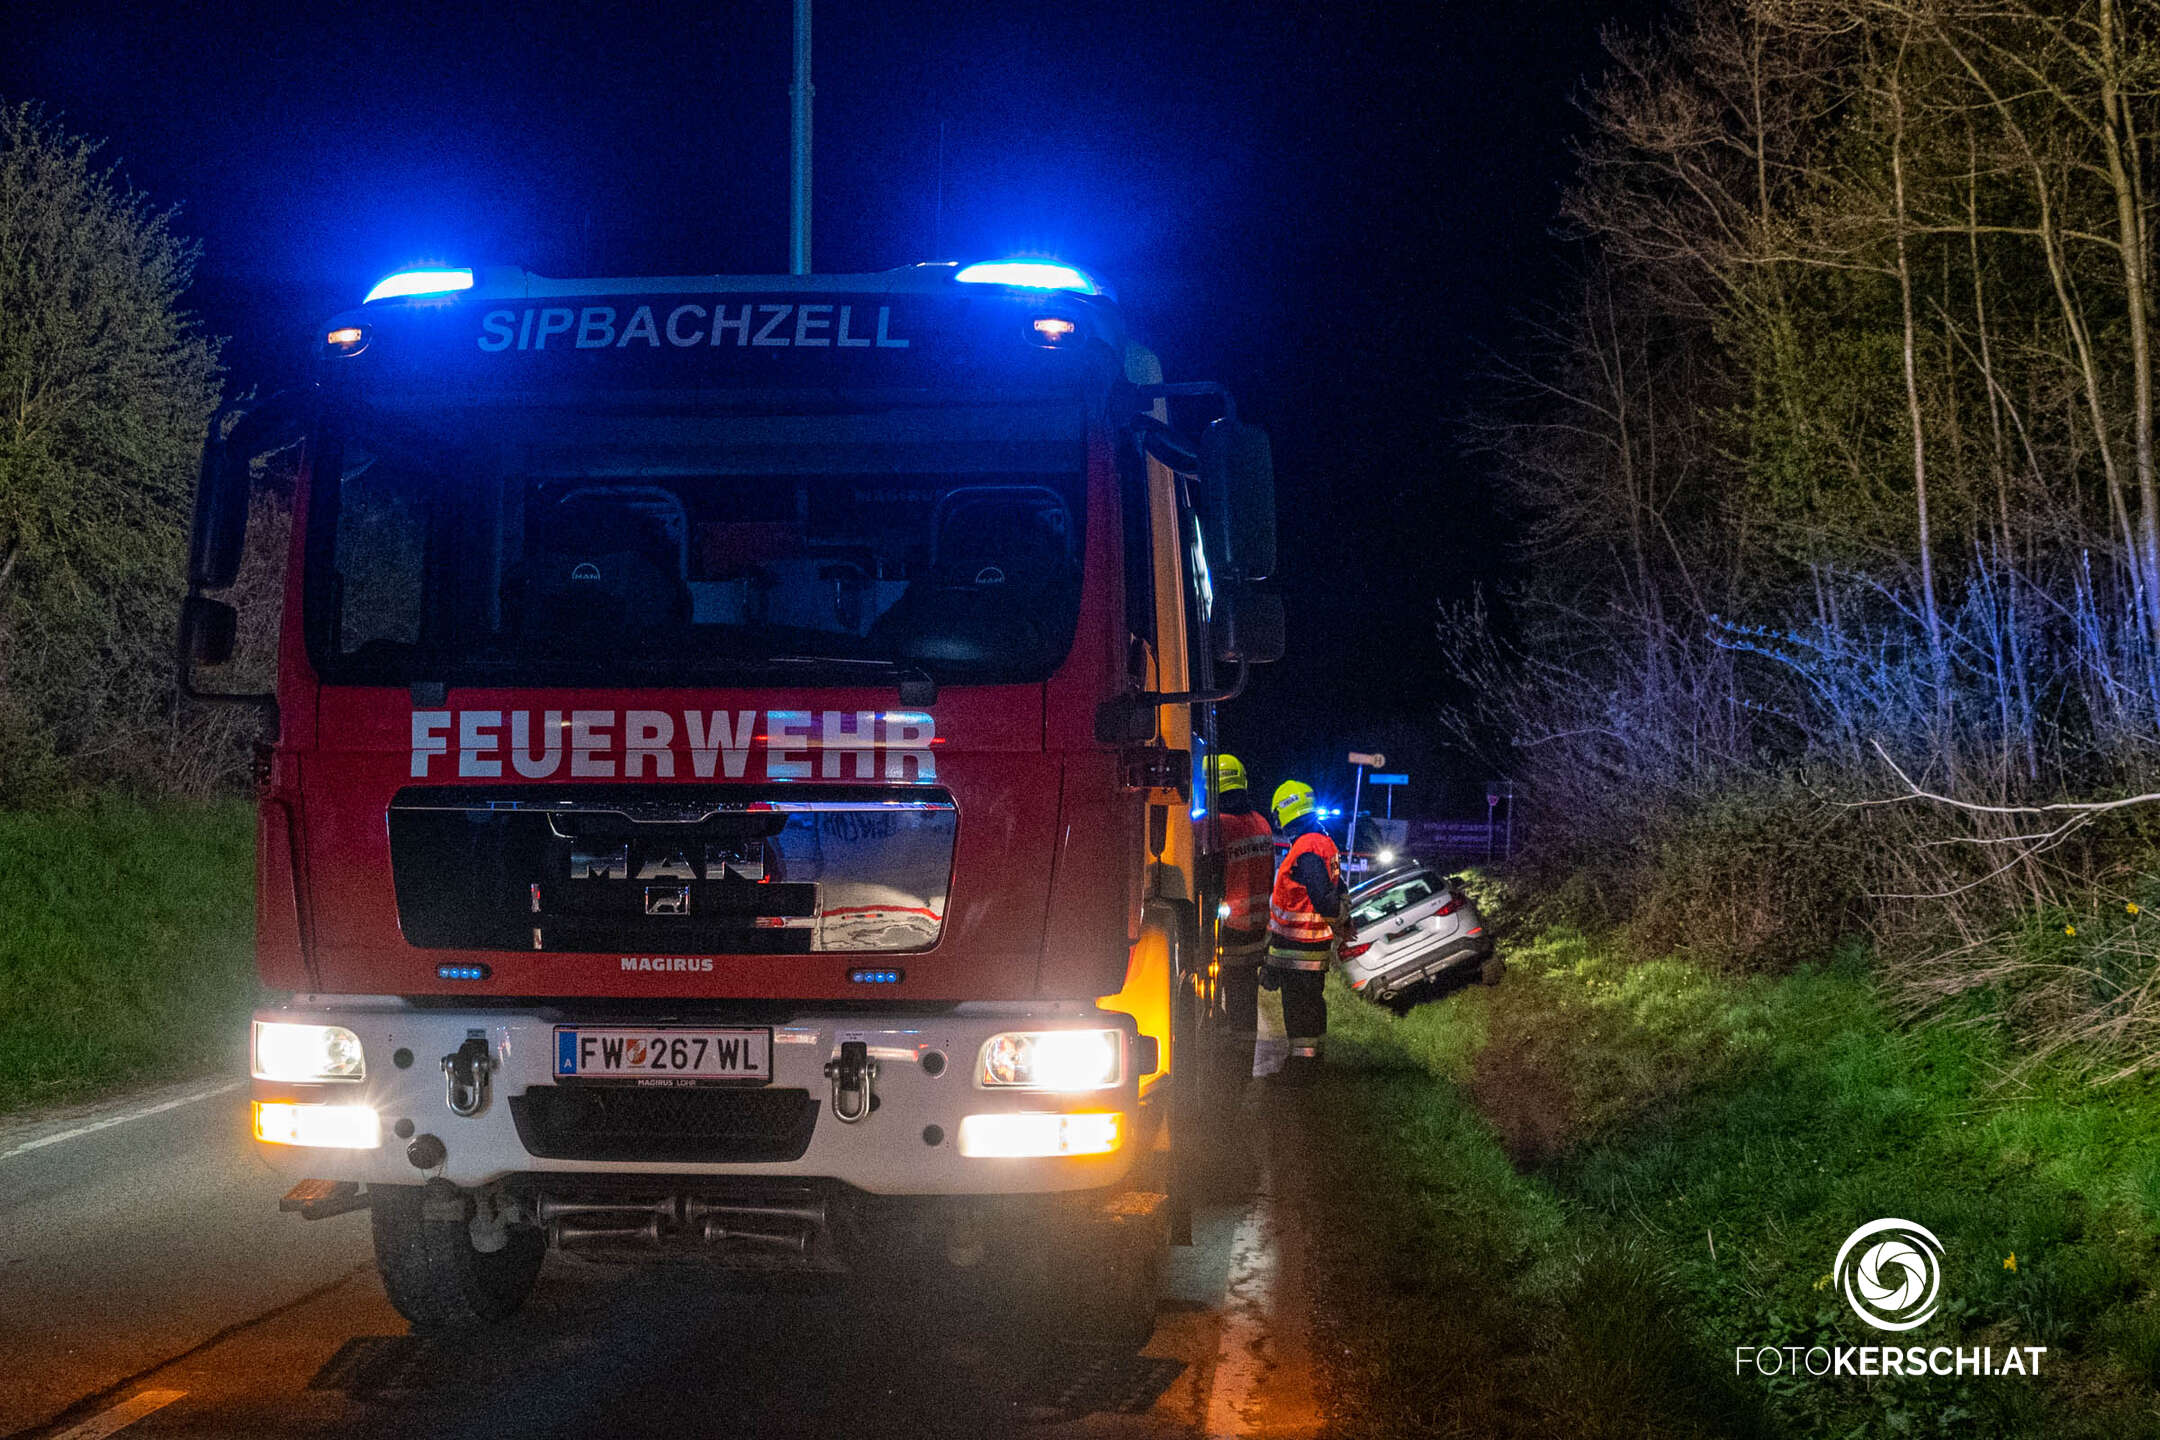 Pkw kam in Sipbachzell von der Fahrbahn ab-Lenker unverletzt